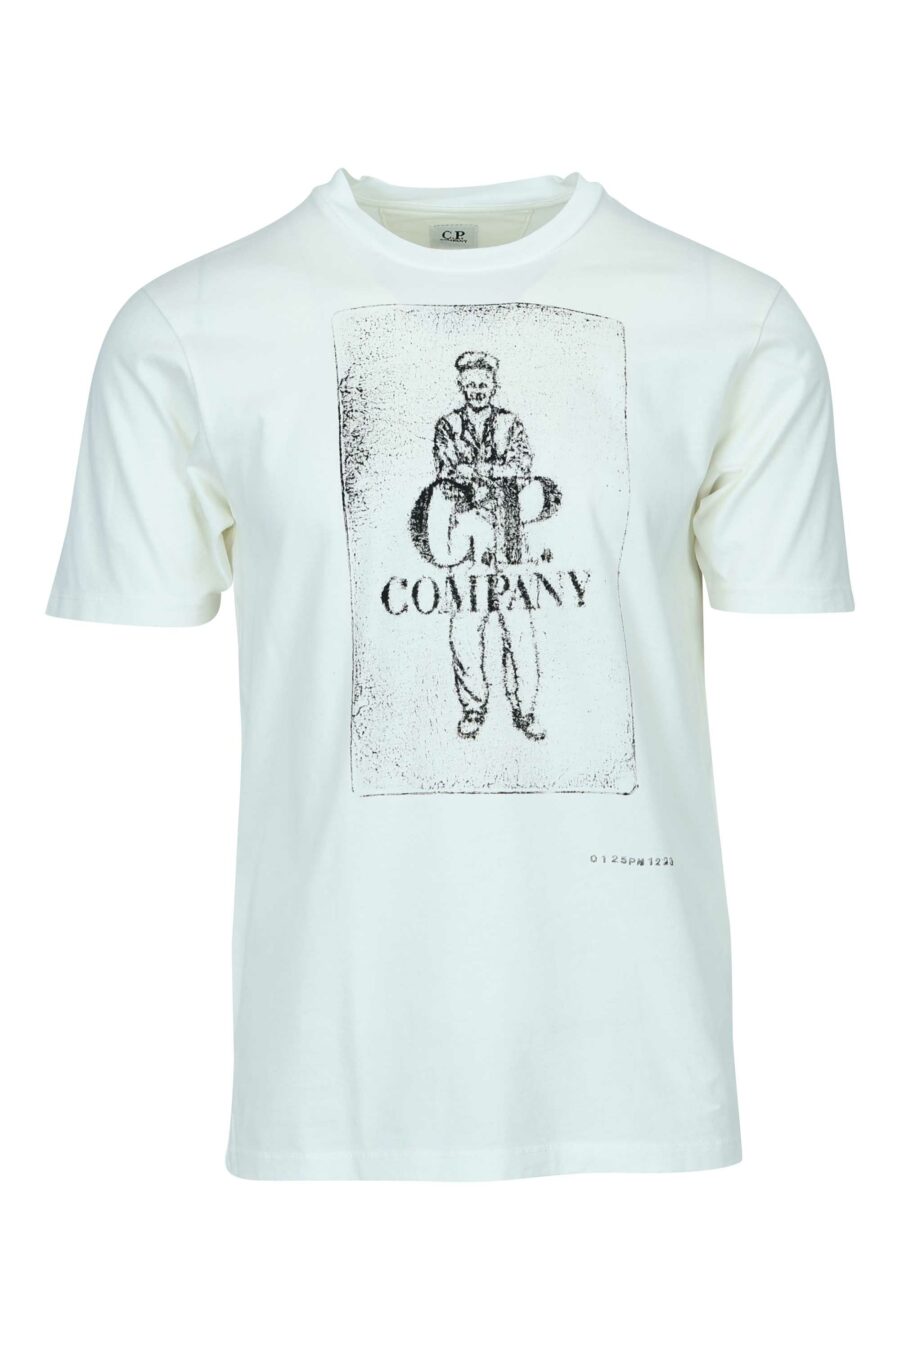 T-shirt branca com maxilogue de marinheiro e logótipo "cp" - 7620943776478